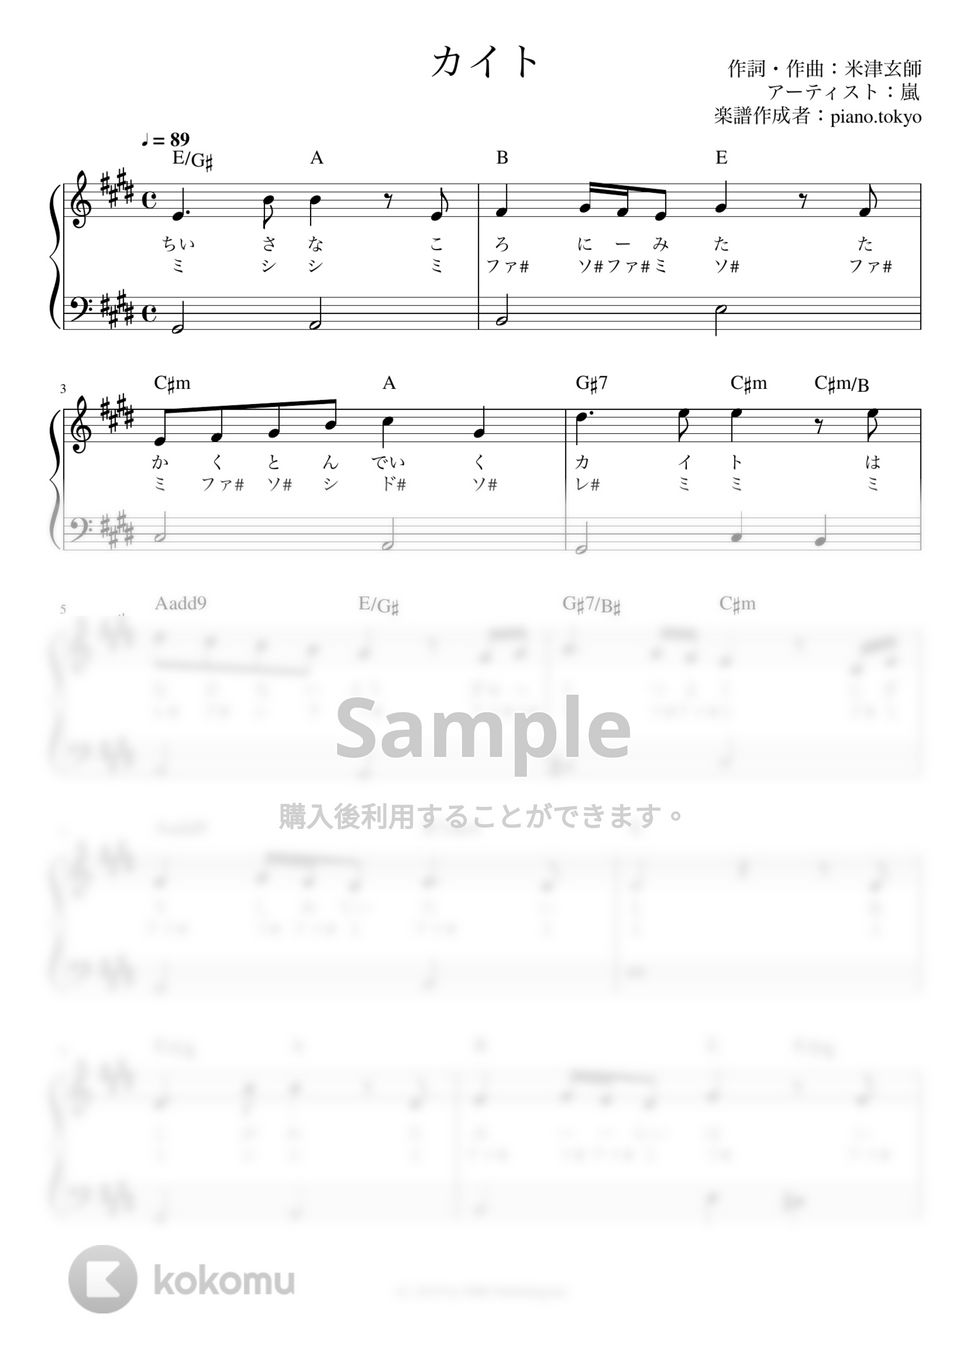 嵐 - カイト (かんたん 歌詞付き ドレミ付き 初心者) by piano.tokyo